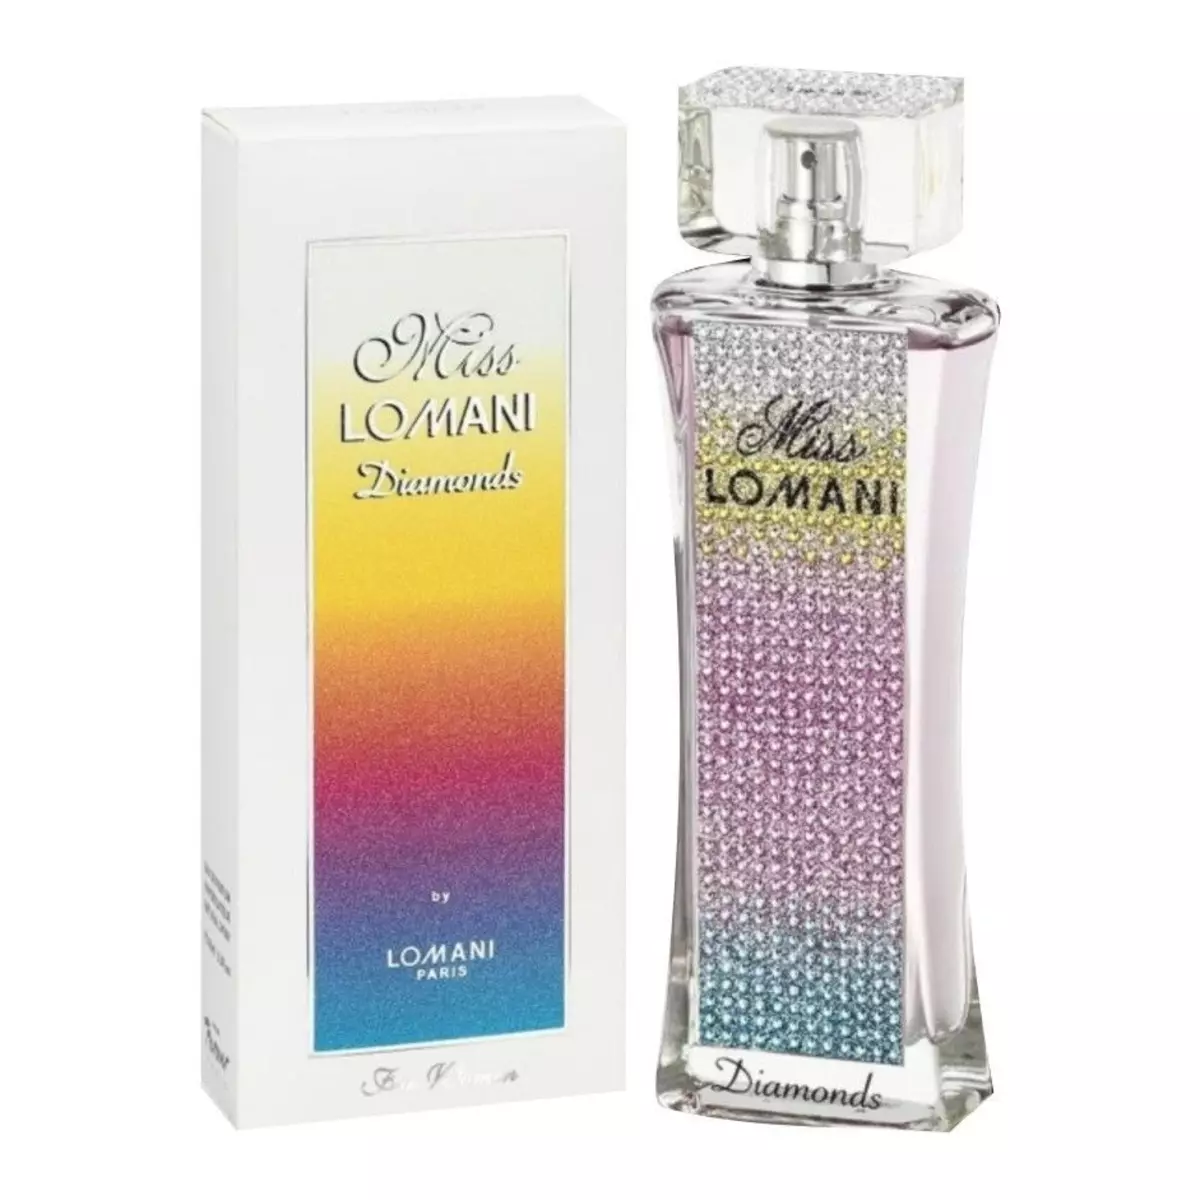 Parfémy Lomani: pánské a dámské toaletní voda, elitida, nejlepší a slečna lani, tipy na výběr parfémy 25168_9